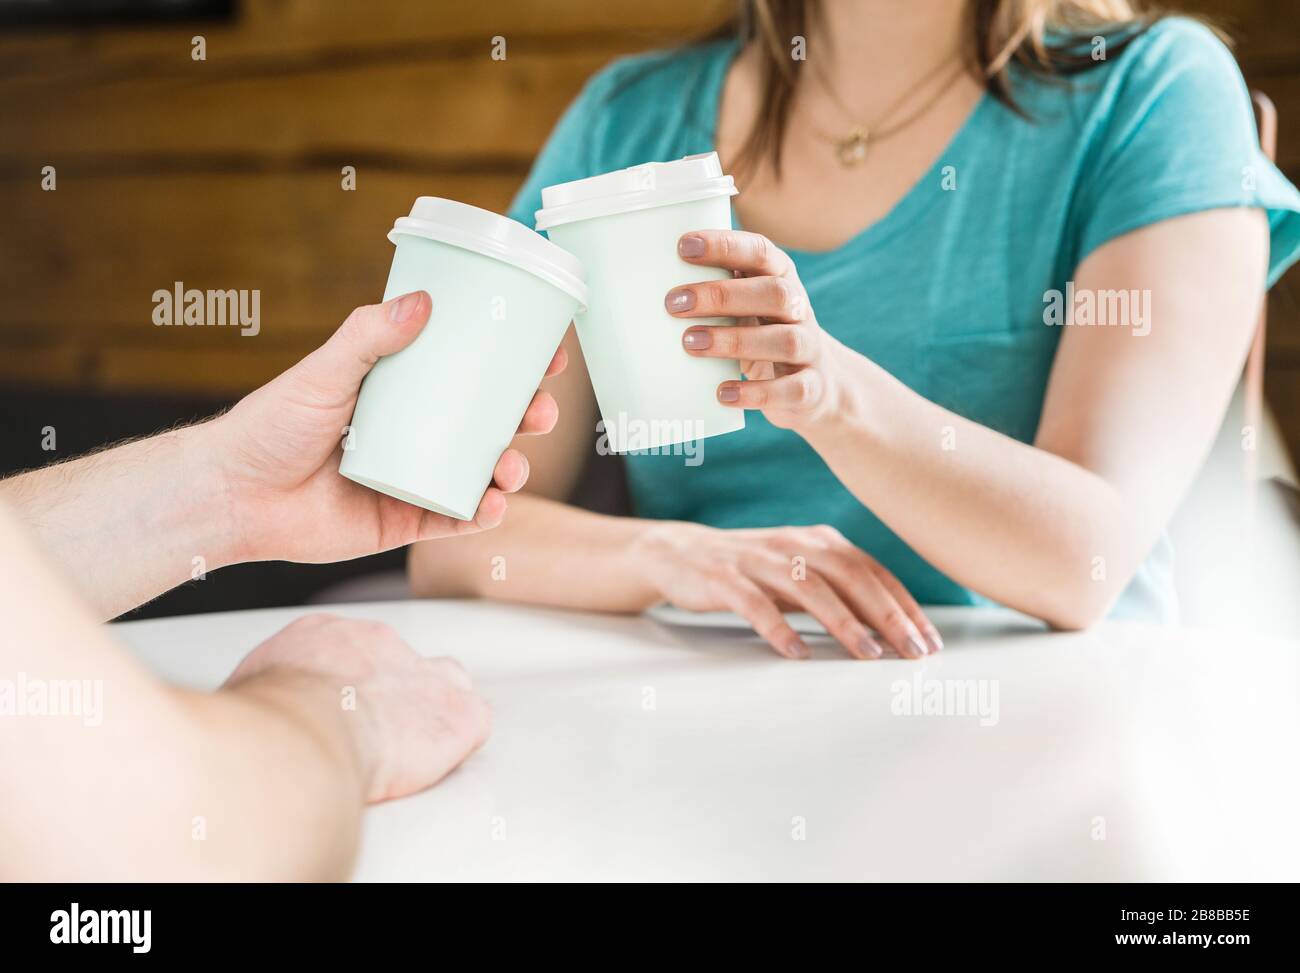 Due amici o una coppia che tengono insieme delle tazze da caffè e si rallegrano nel caffè. Accordo, riunione o celebrazione. L'uomo e la donna legano. Grazie! Foto Stock